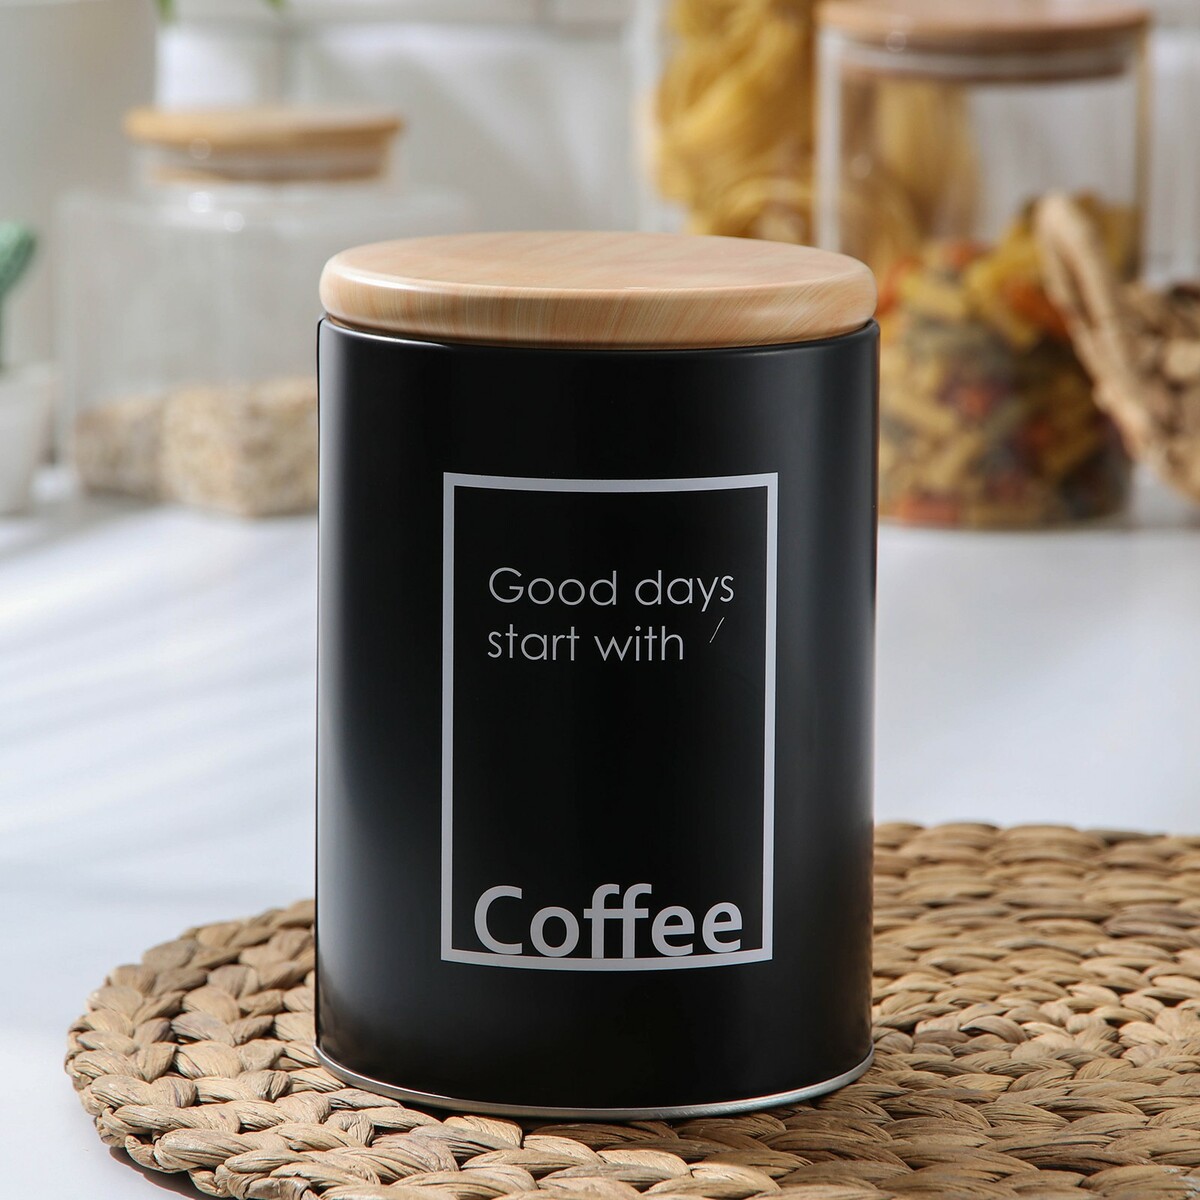 Банка для сыпучих продуктов кофе lifestyle, 11×15,5 см, цвет черный банка для сыпучих продуктов сахар lifestyle 11×11×15 5 см